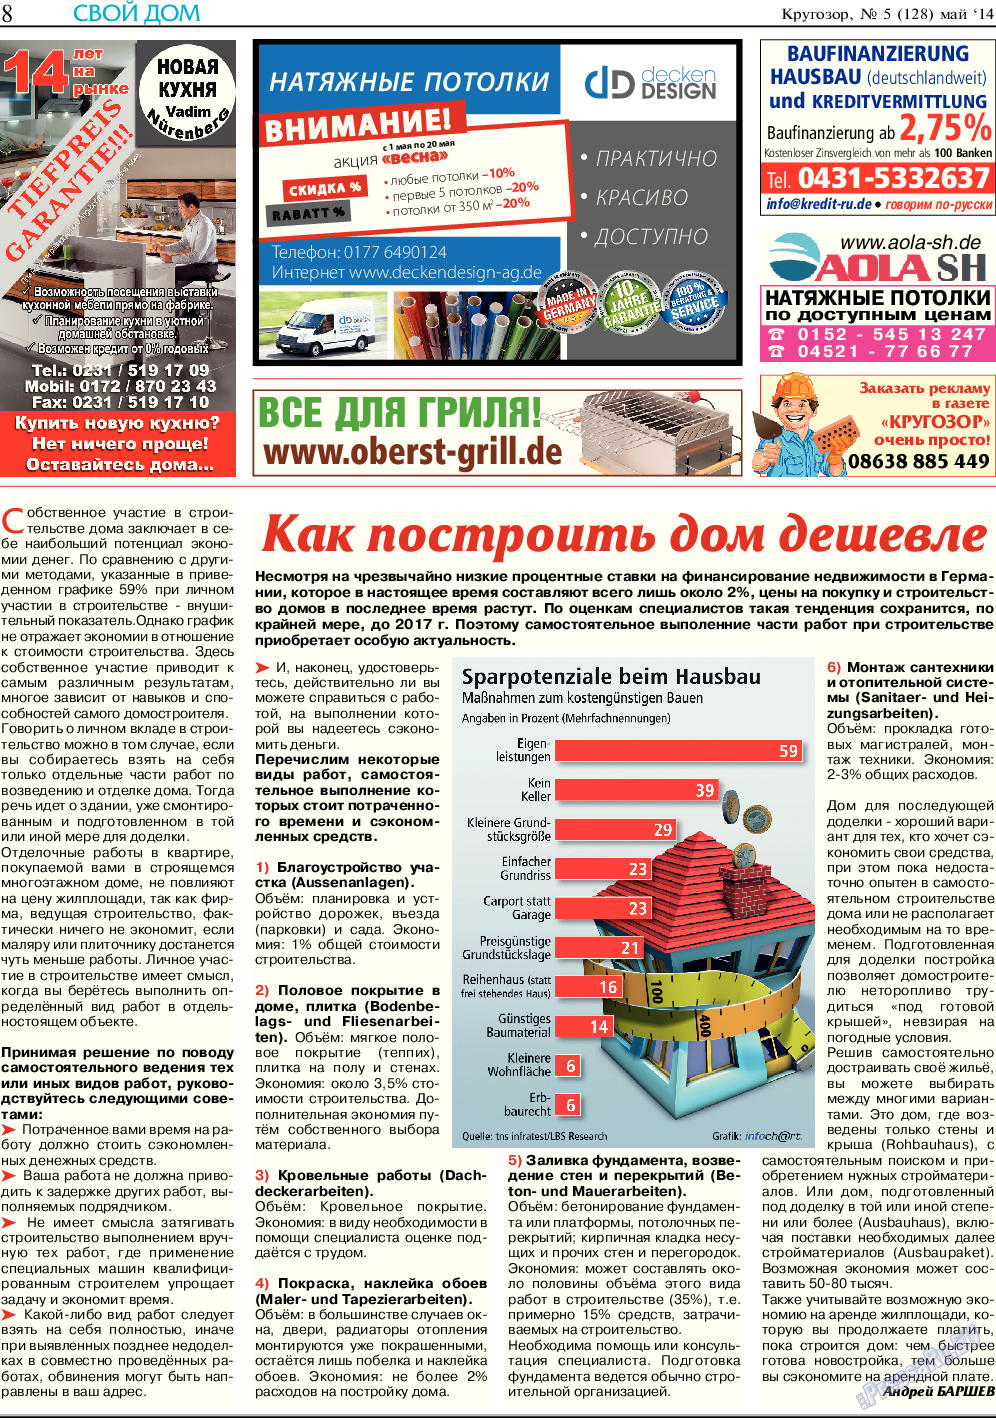 Кругозор (газета). 2014 год, номер 5, стр. 8